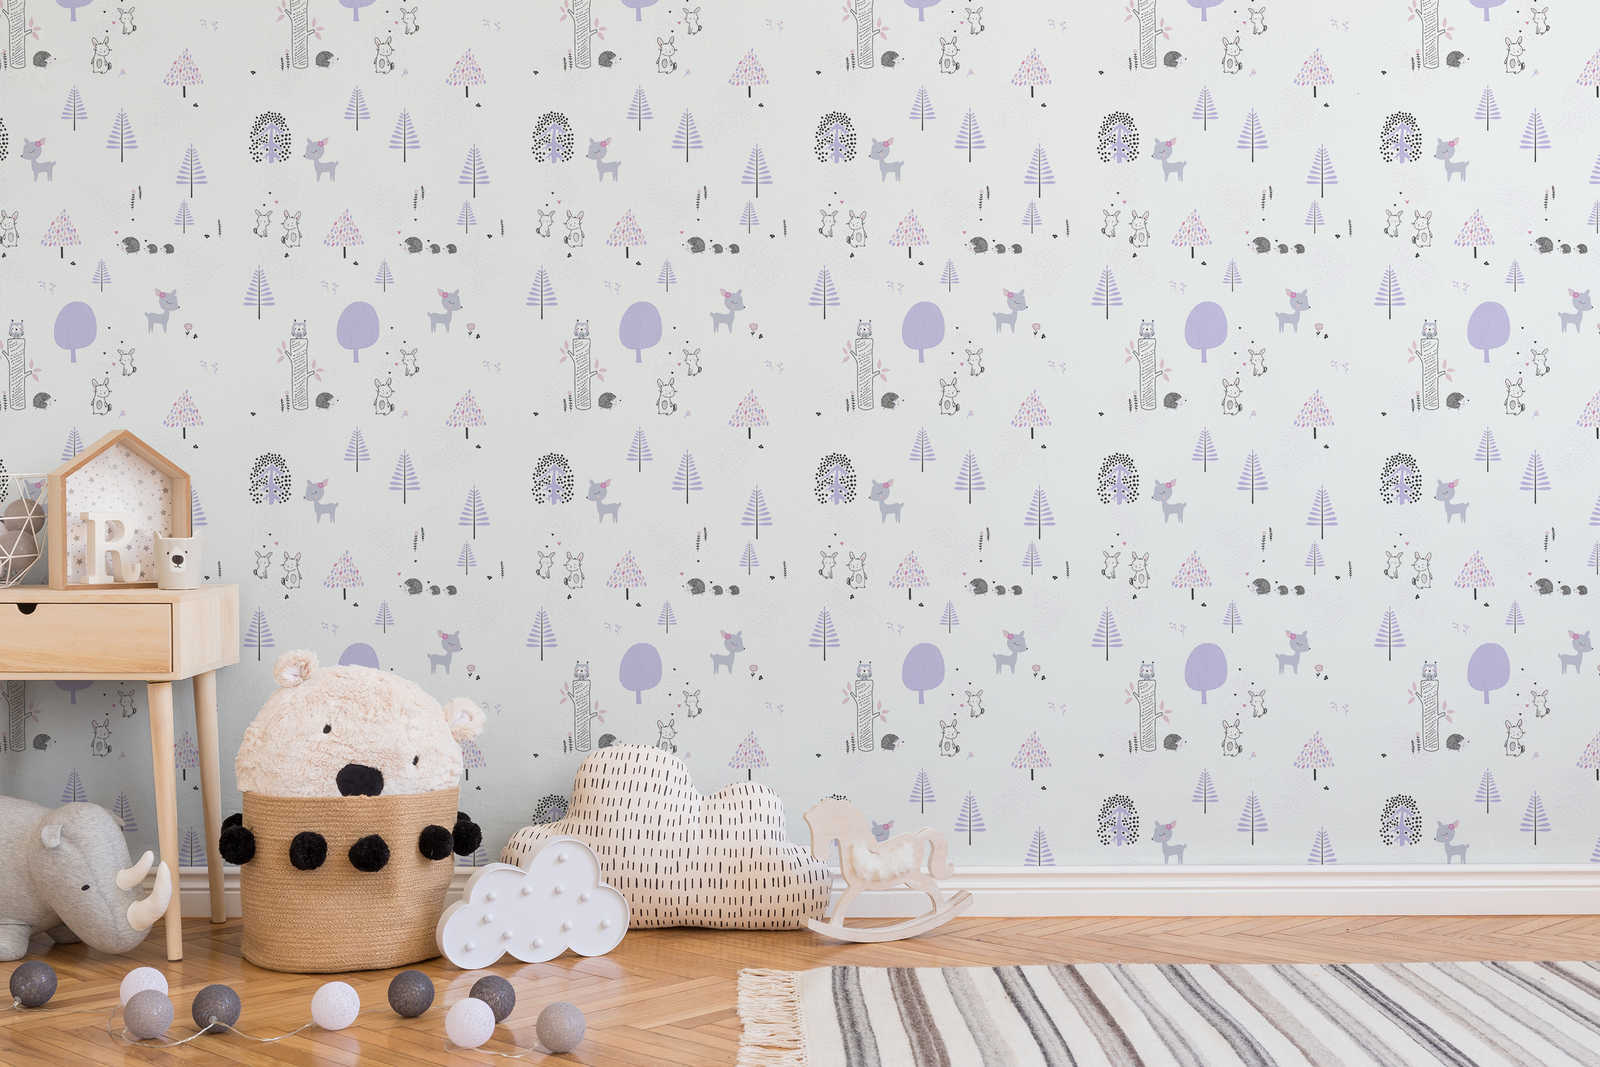             Nursery wallpaper forest animals - purple, white, grey
        